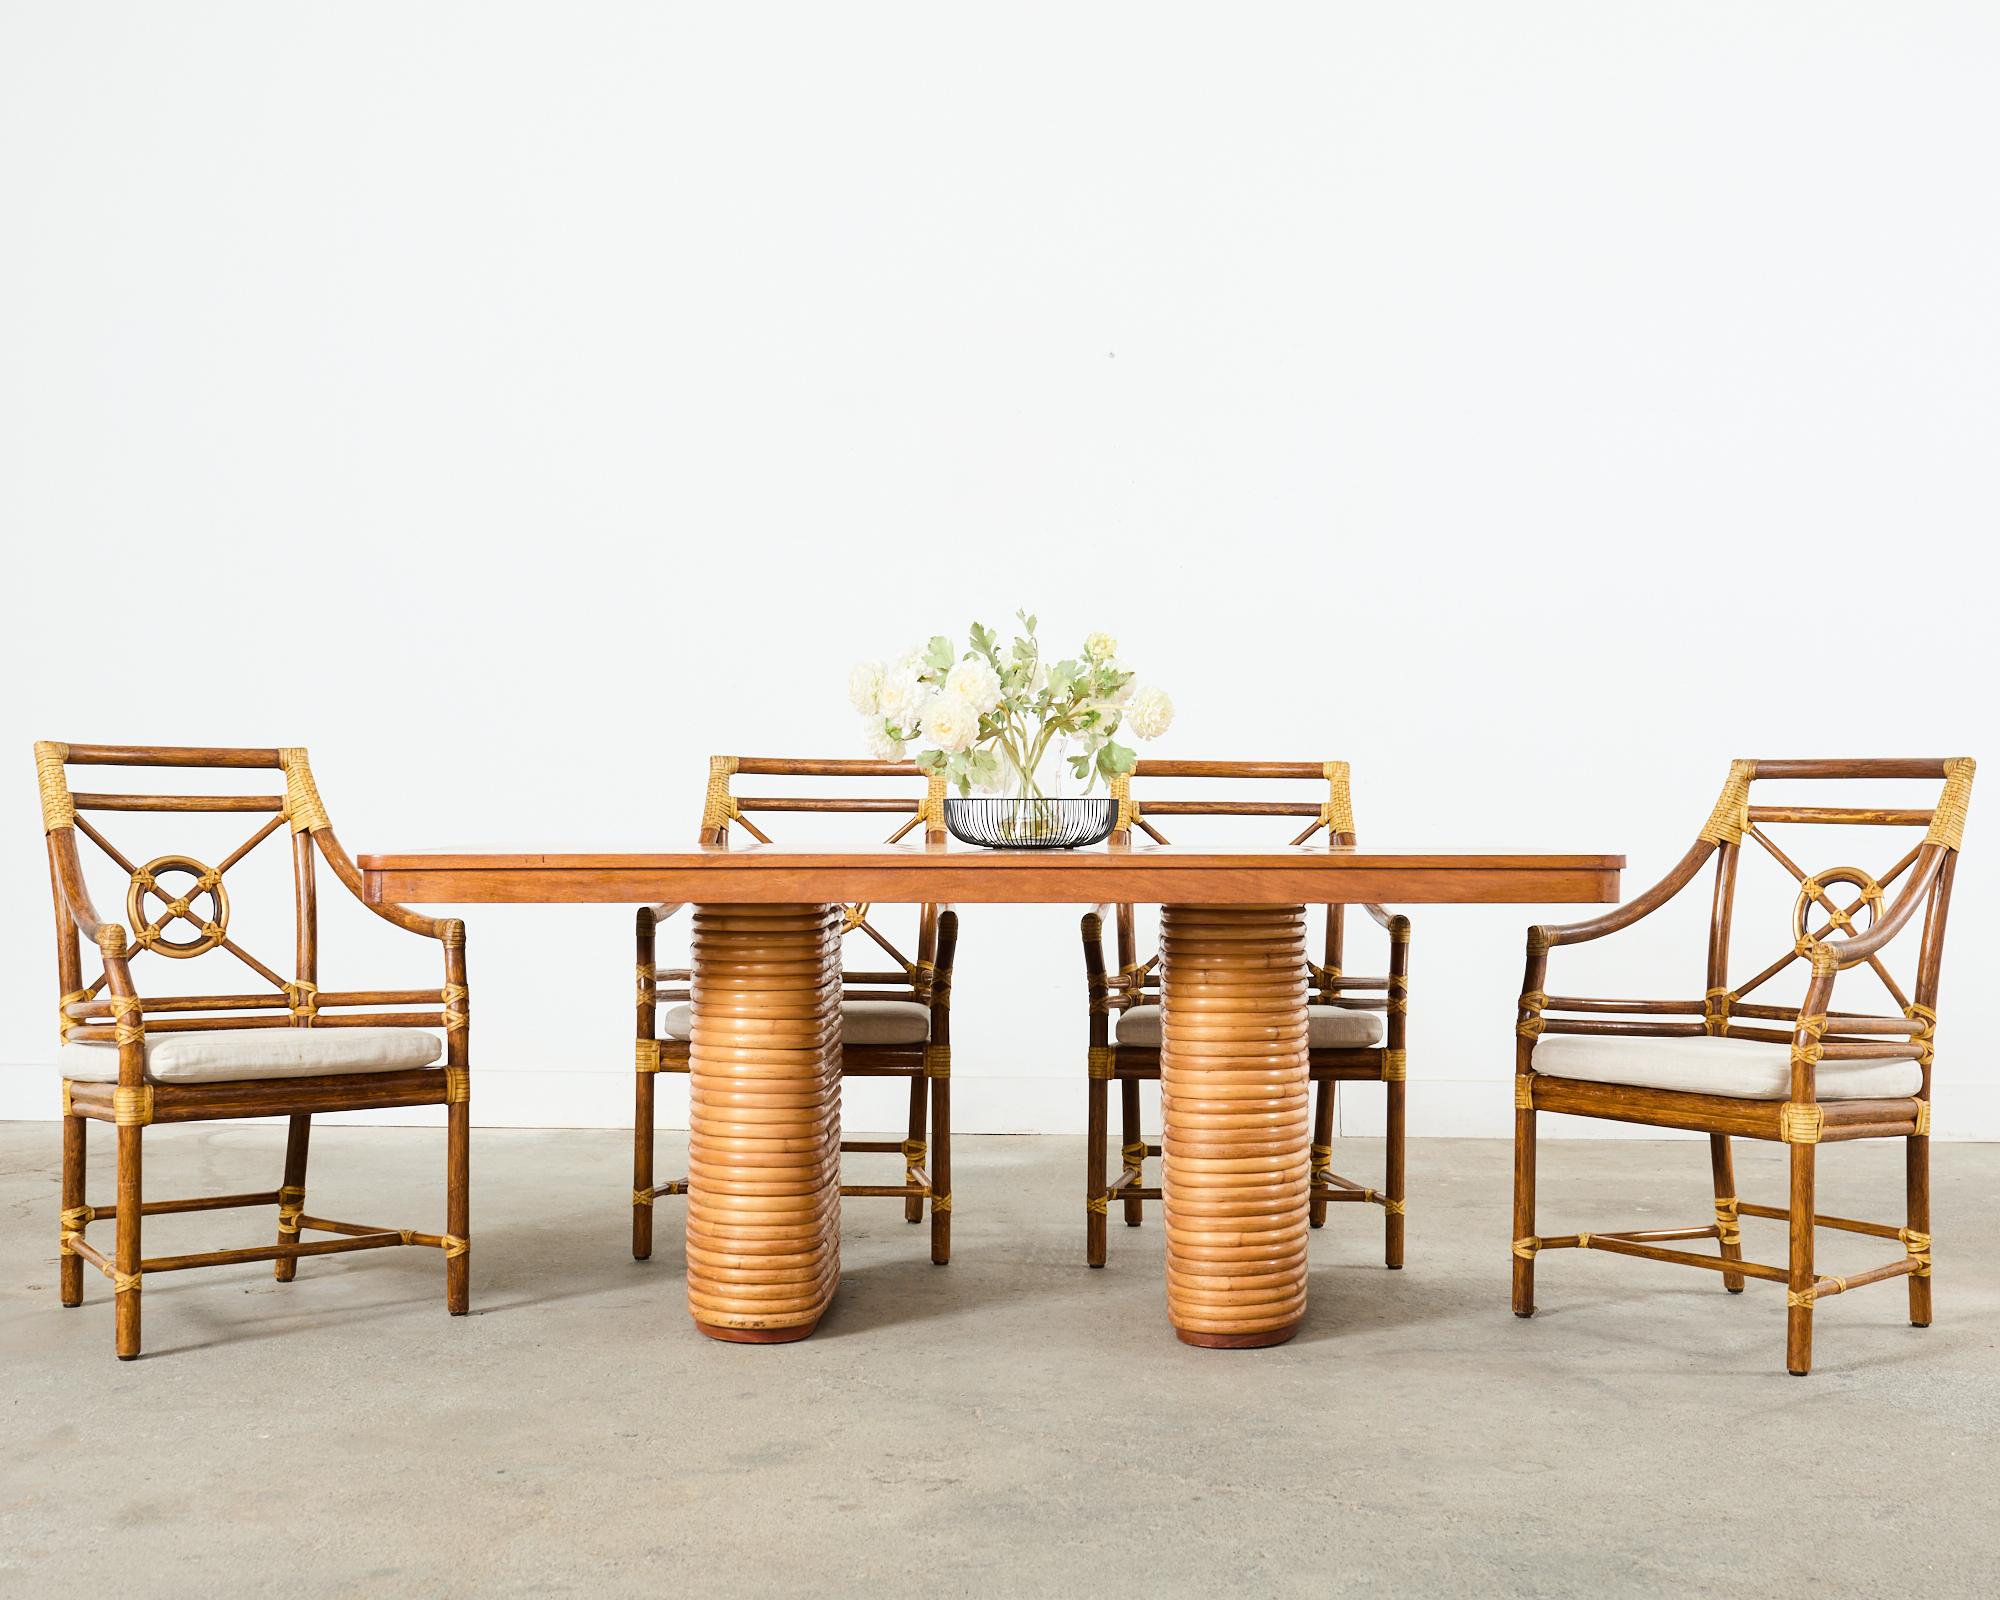 Opulent ensemble de six chaises de salle à manger en rotin sur mesure, fabriquées dans le style moderne organique de la côte californienne par McGuire. L'ensemble se compose de cinq fauteuils cibles (modèle MCM59) et d'une chaise d'appoint assortie